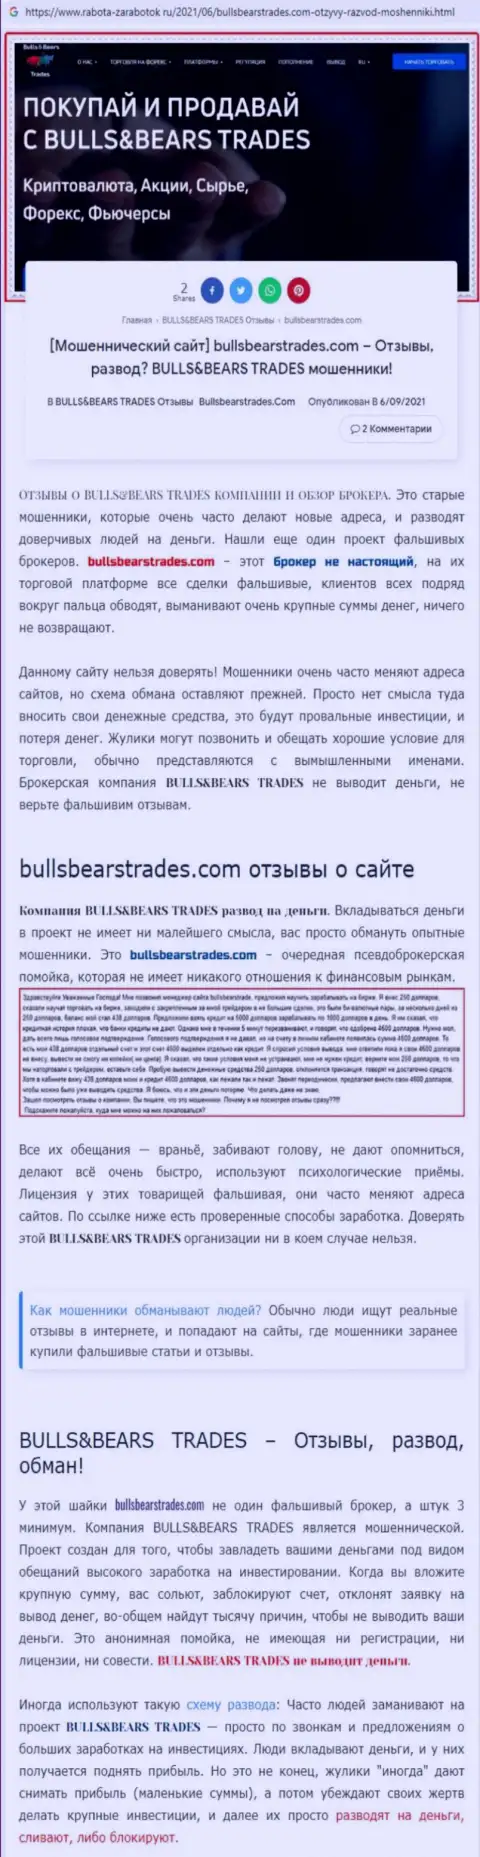 Обзор незаконно действующей конторы Bulls BearsTrades про то, как оставляет без денег наивных клиентов